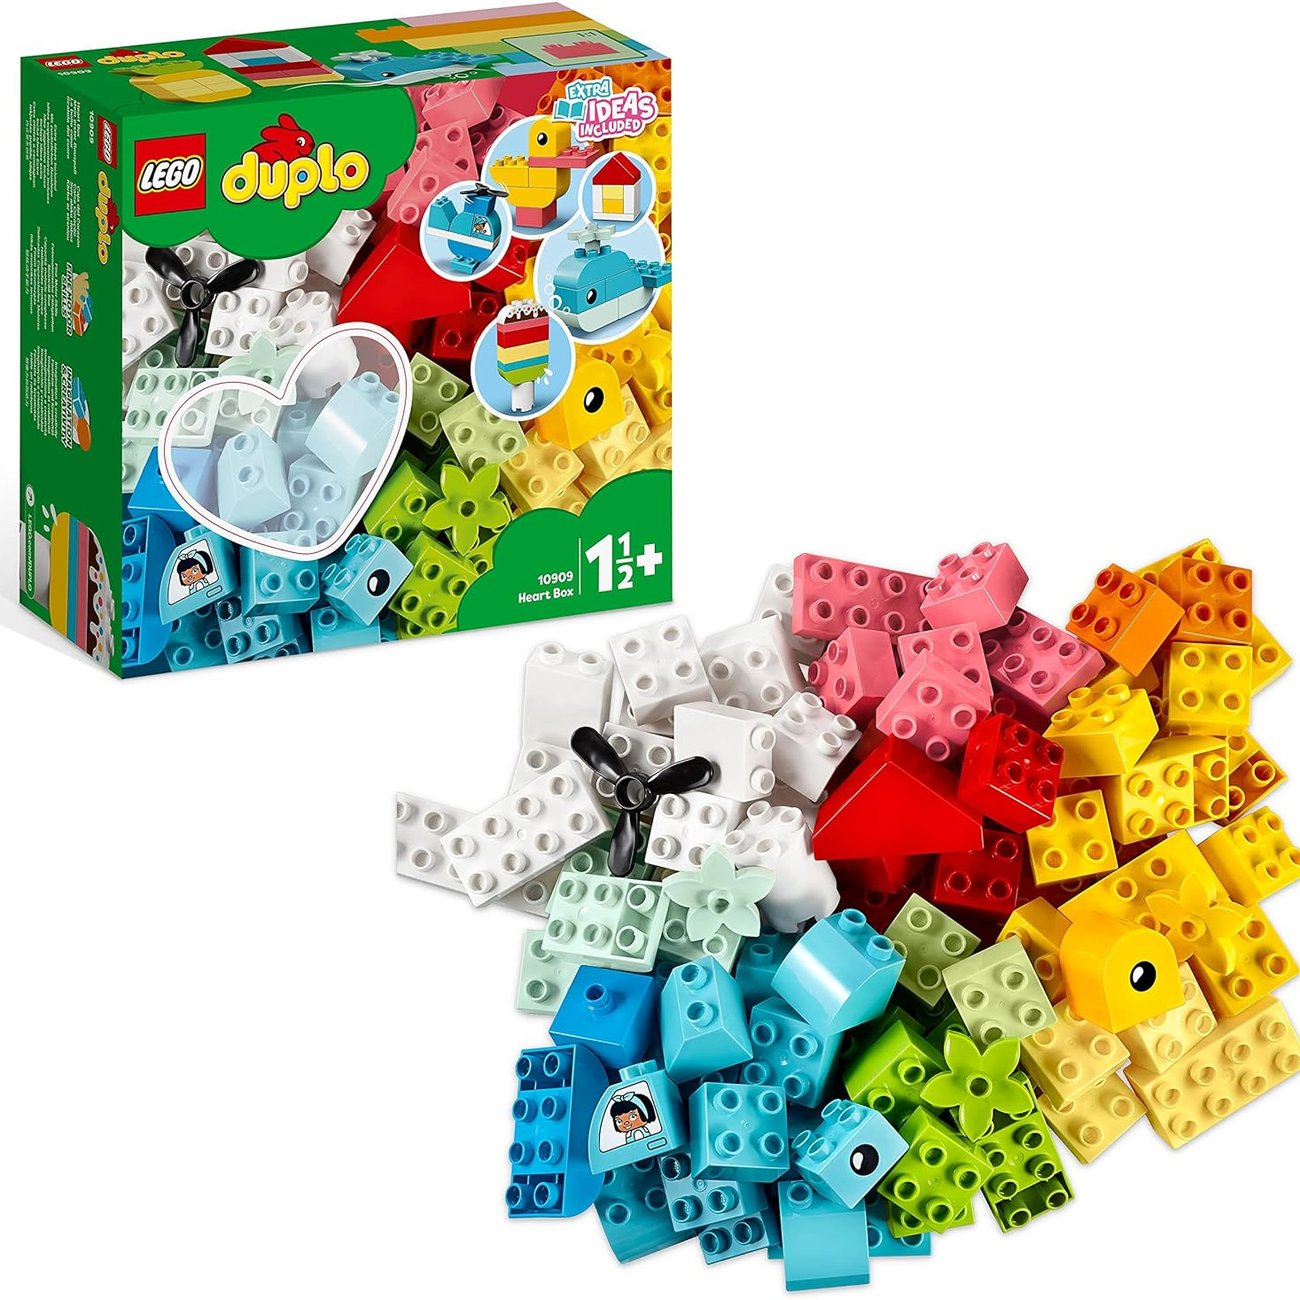 LEGO DUPLO Classic Mein erster Bauspaß, Bausteine-Box